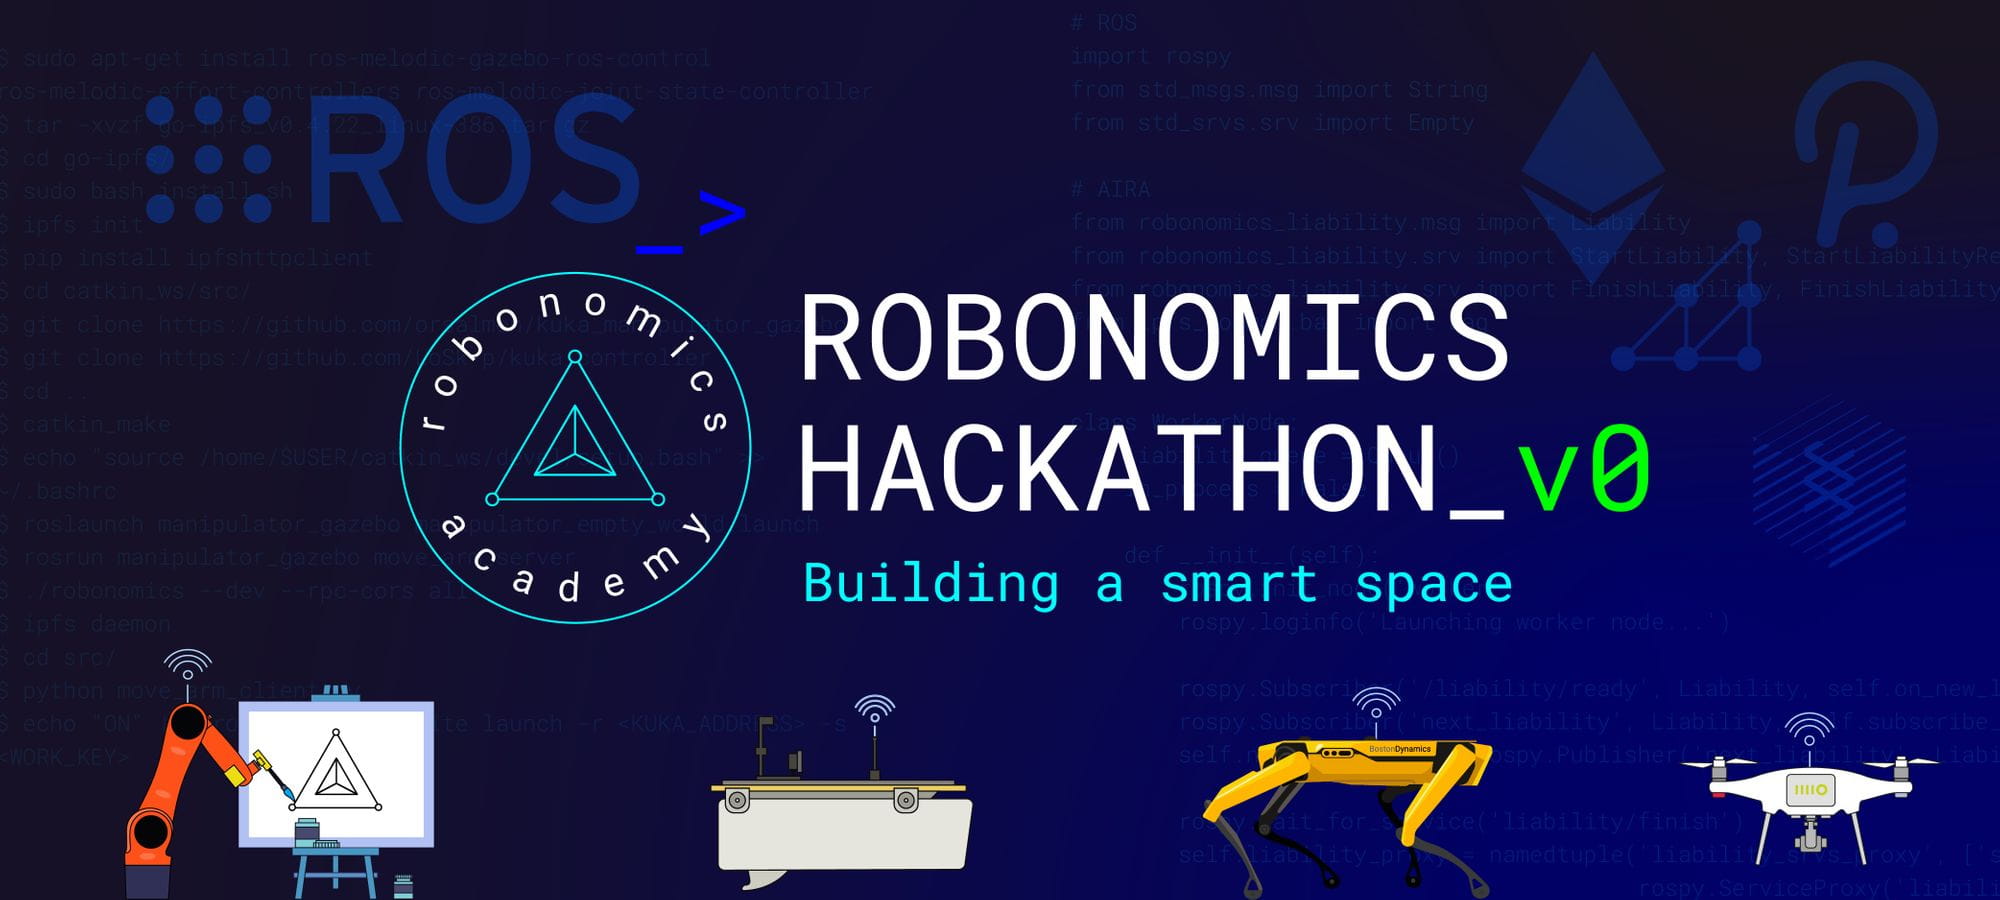 Robonomics Hackathon v0: building a smart place